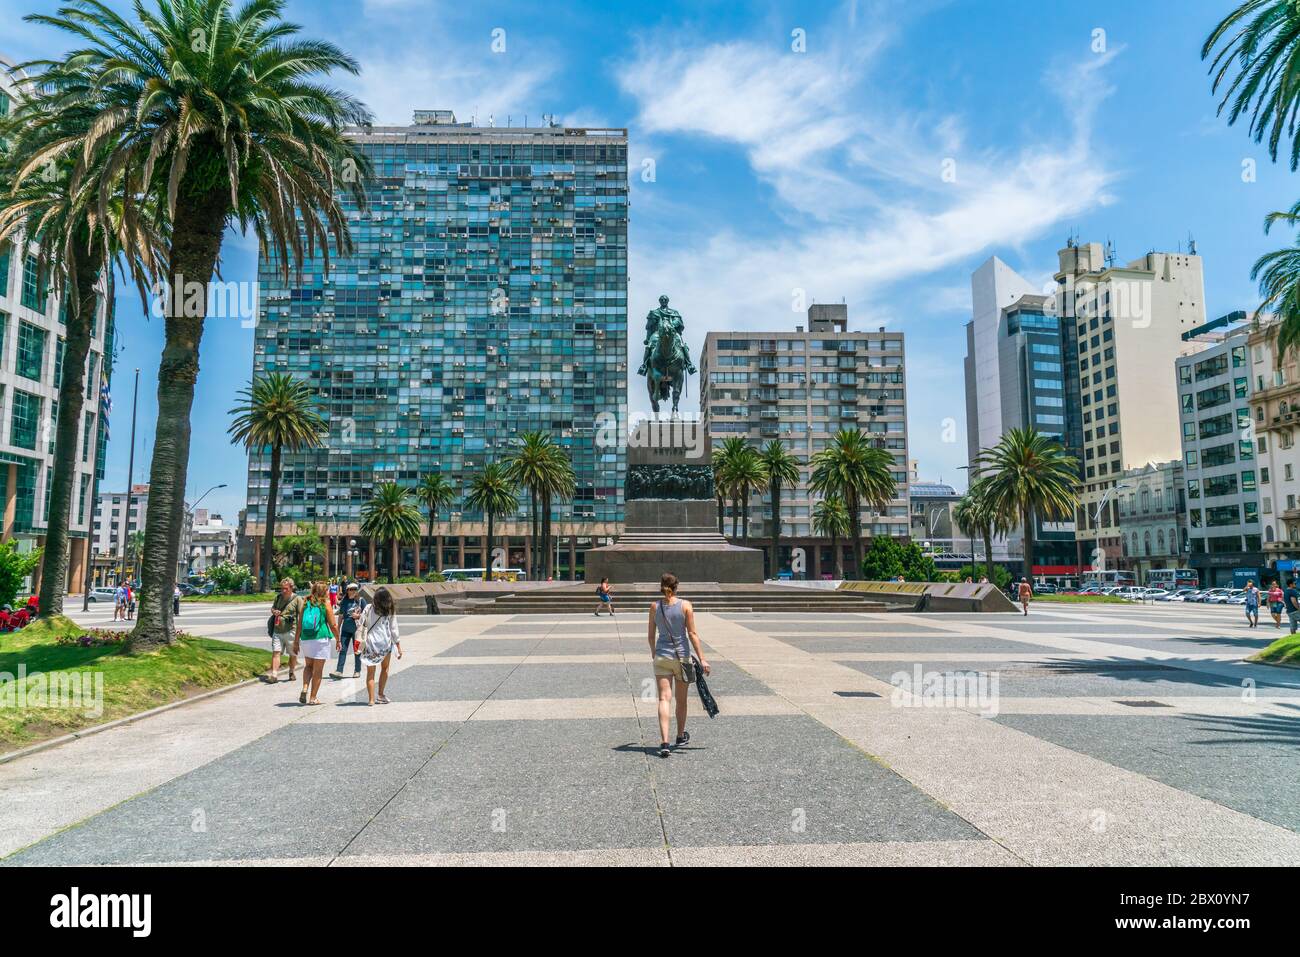 Touristes passant la statue du général Artigas sur la place de l'indépendance (Plaza Indepencia), Montevideo, Uruguay, 26 janvier 2019 Banque D'Images